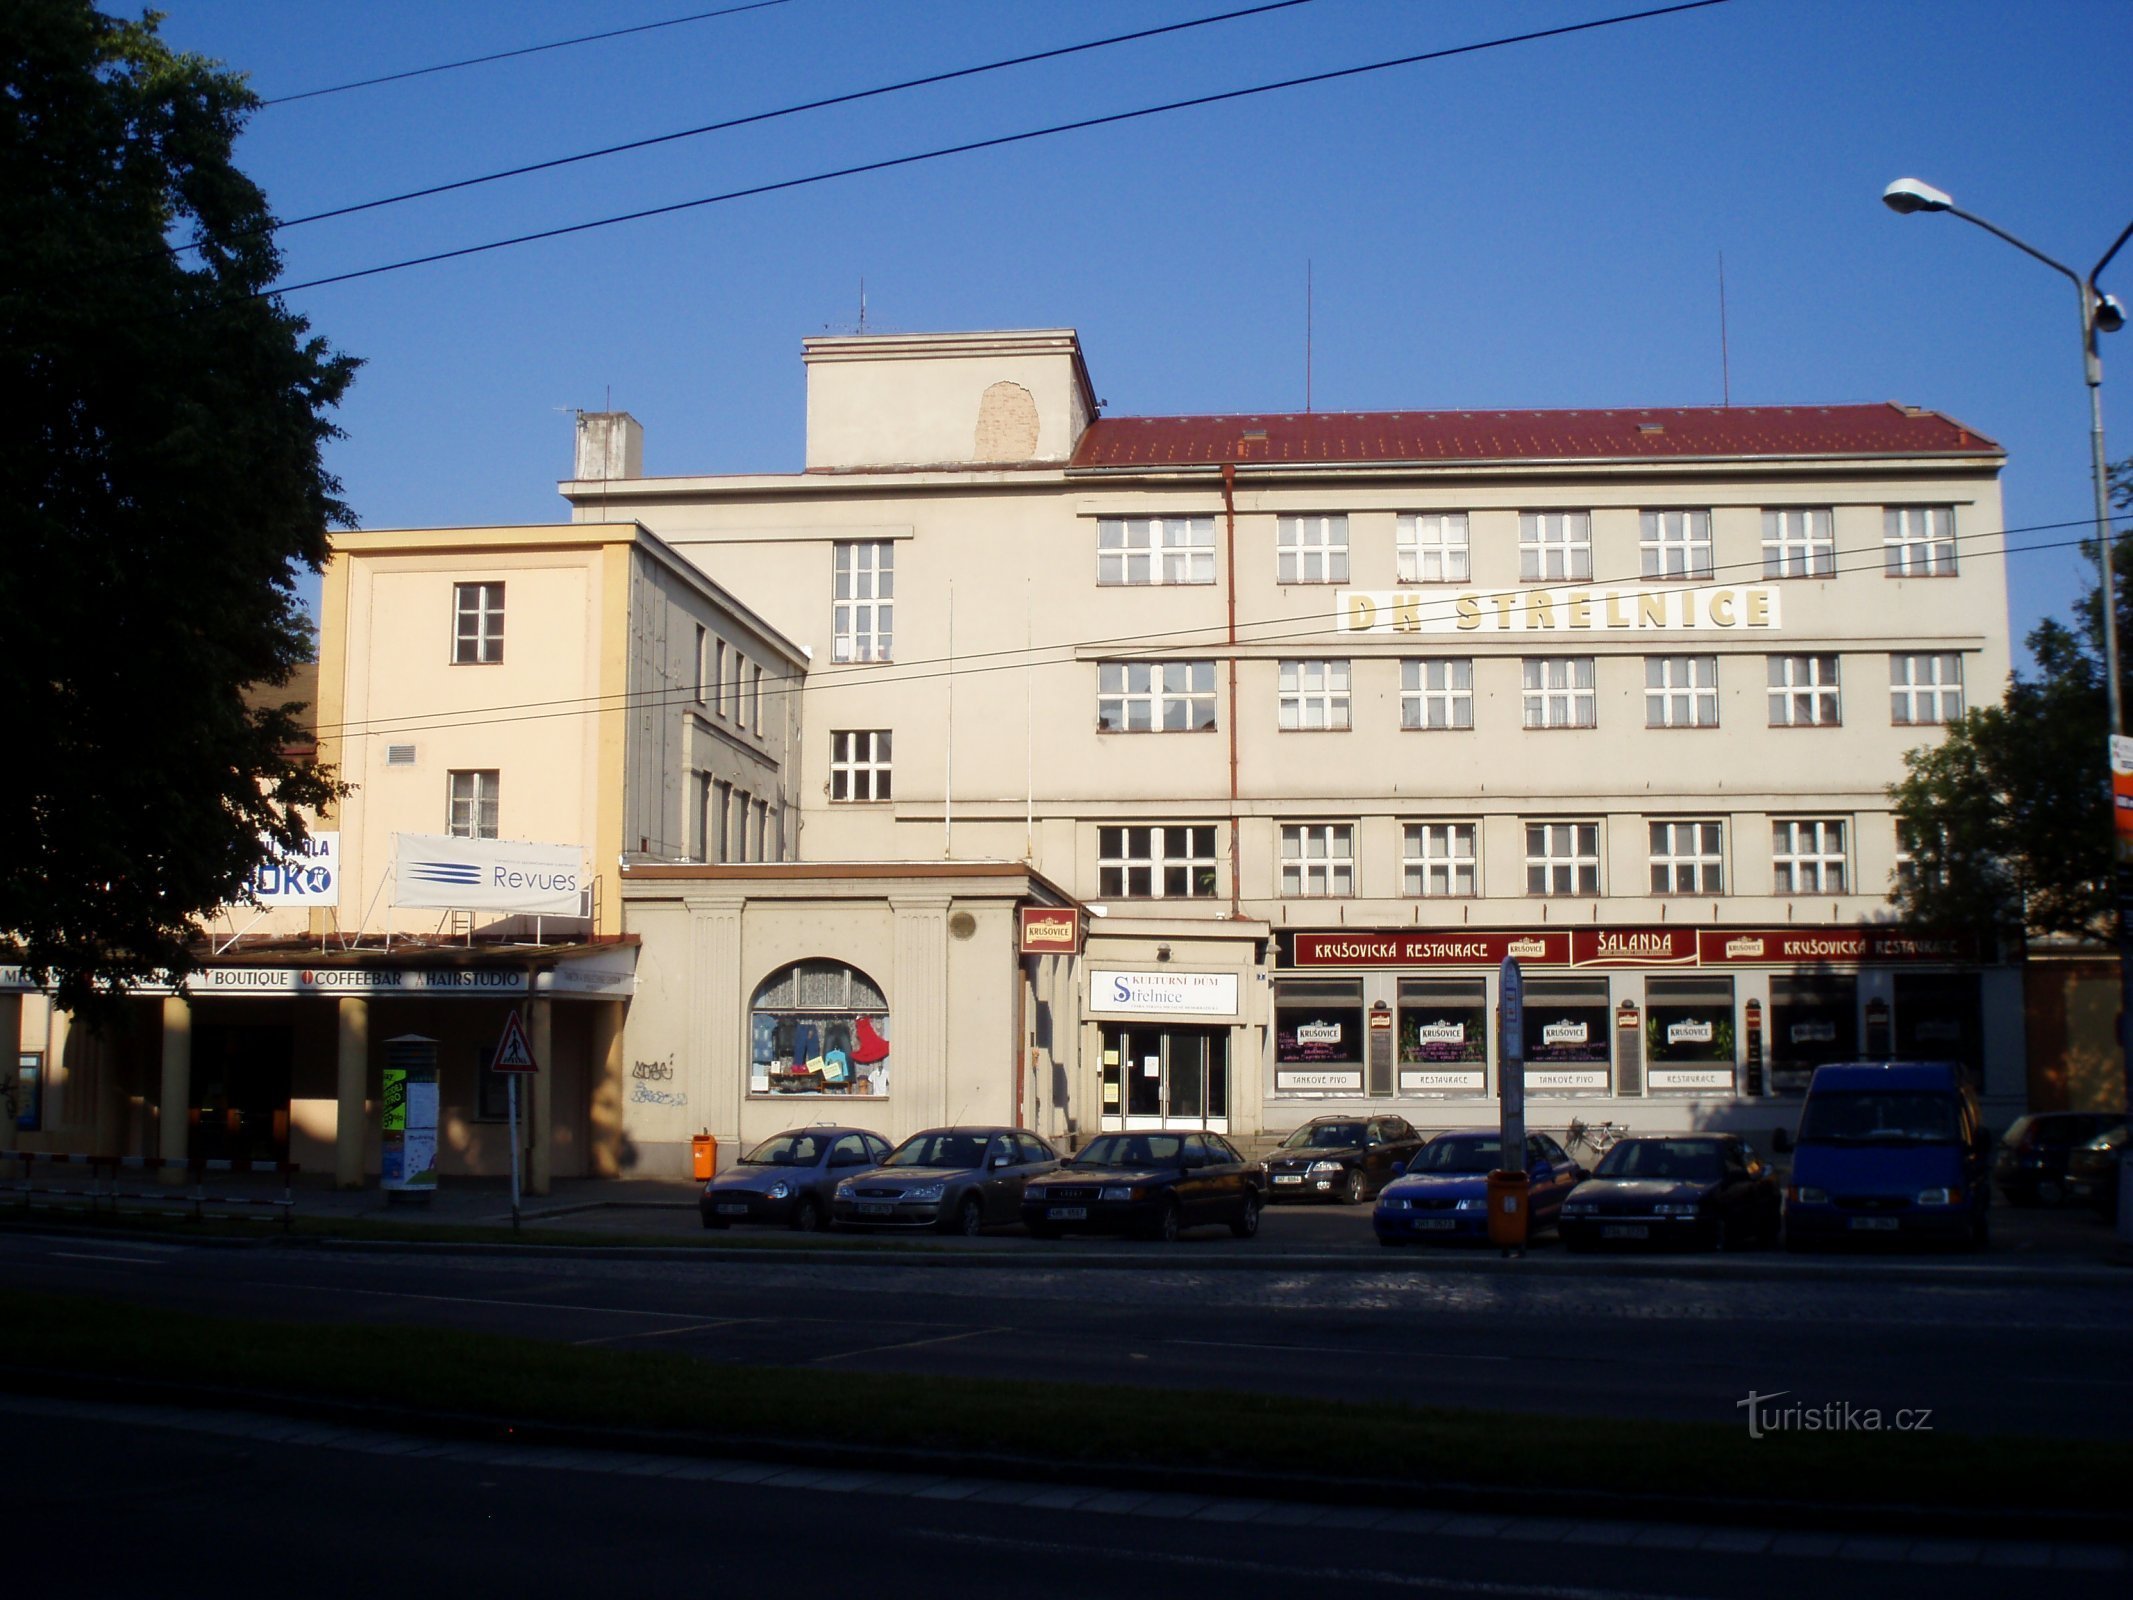 Diện mạo hiện tại của Trường bắn (Hradec Králové, 11.6.2011)